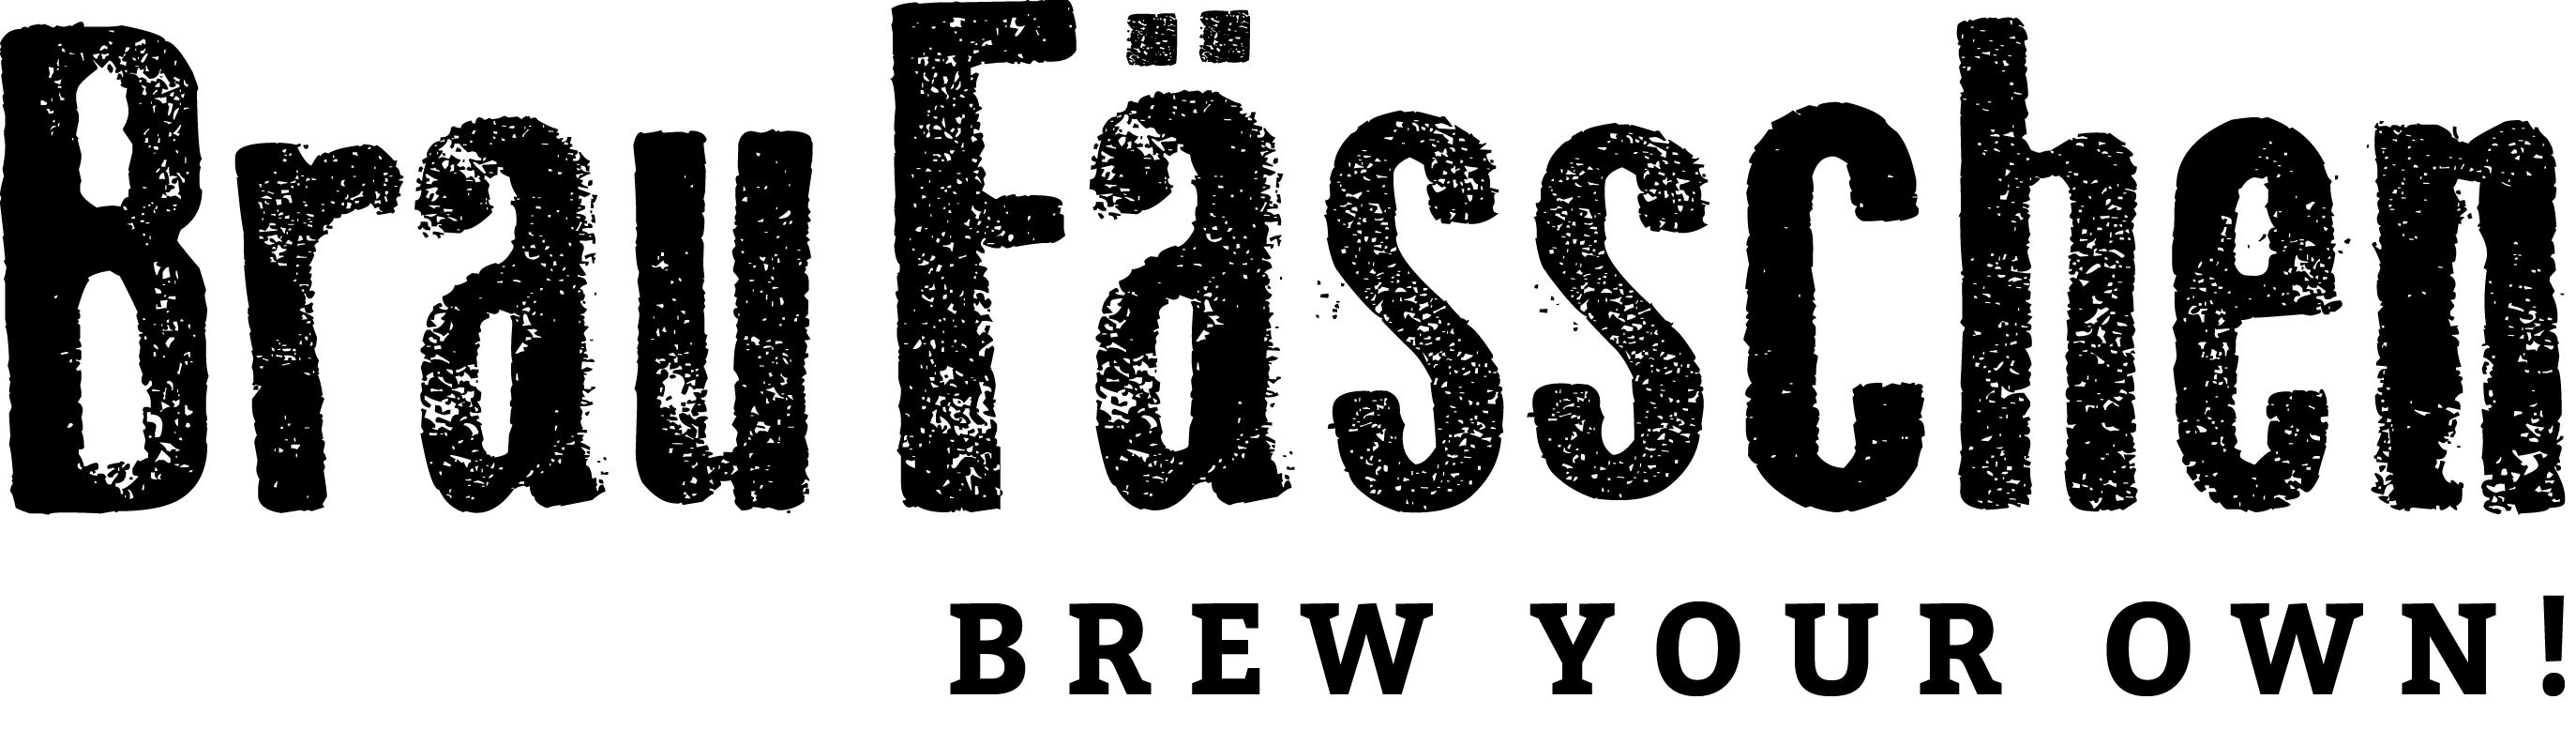 BrauFässchen Logo